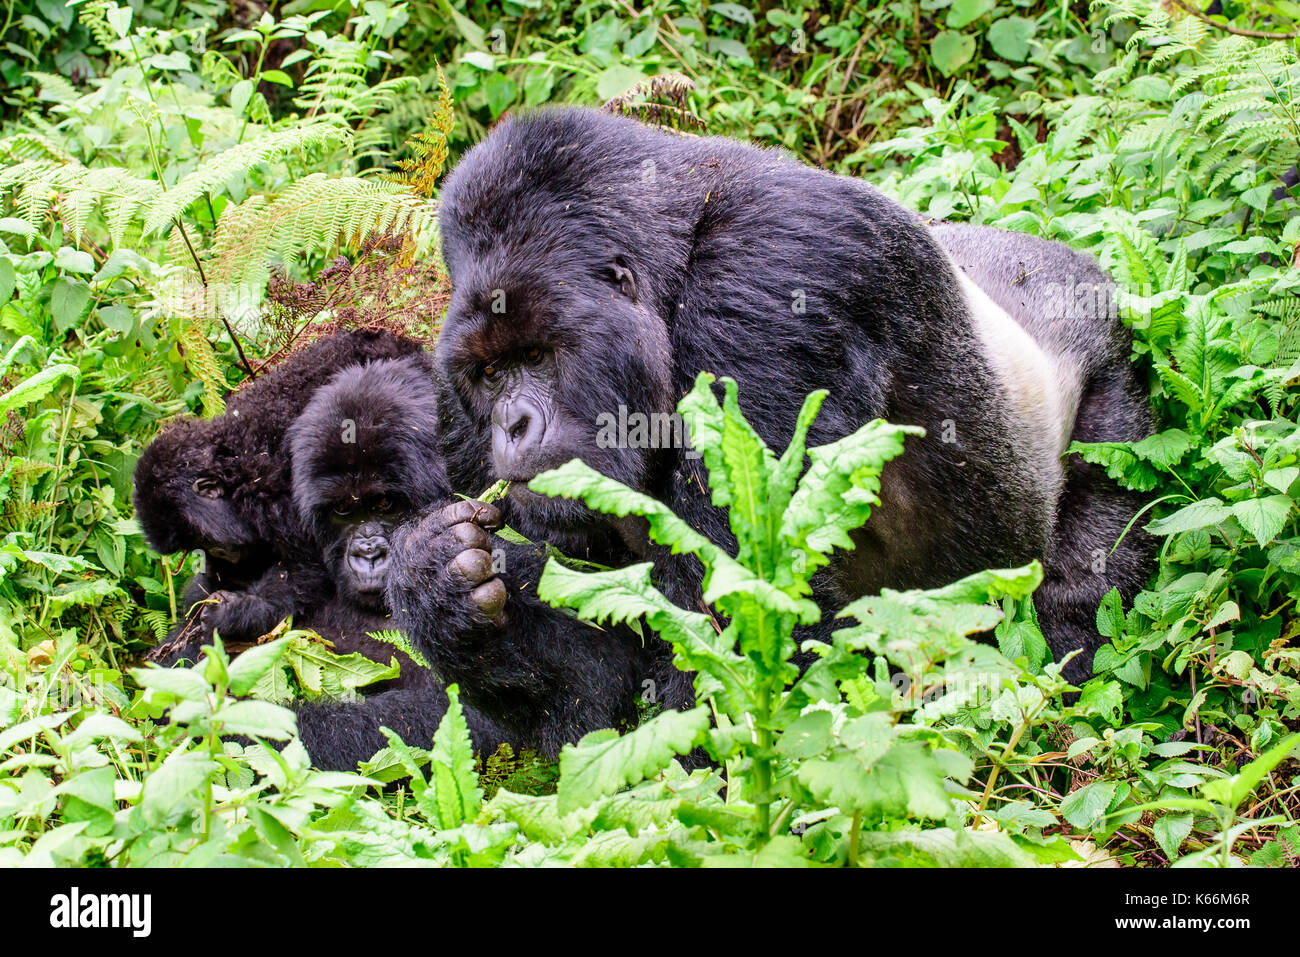 Silverback mountain gorilla with family Stock Photo